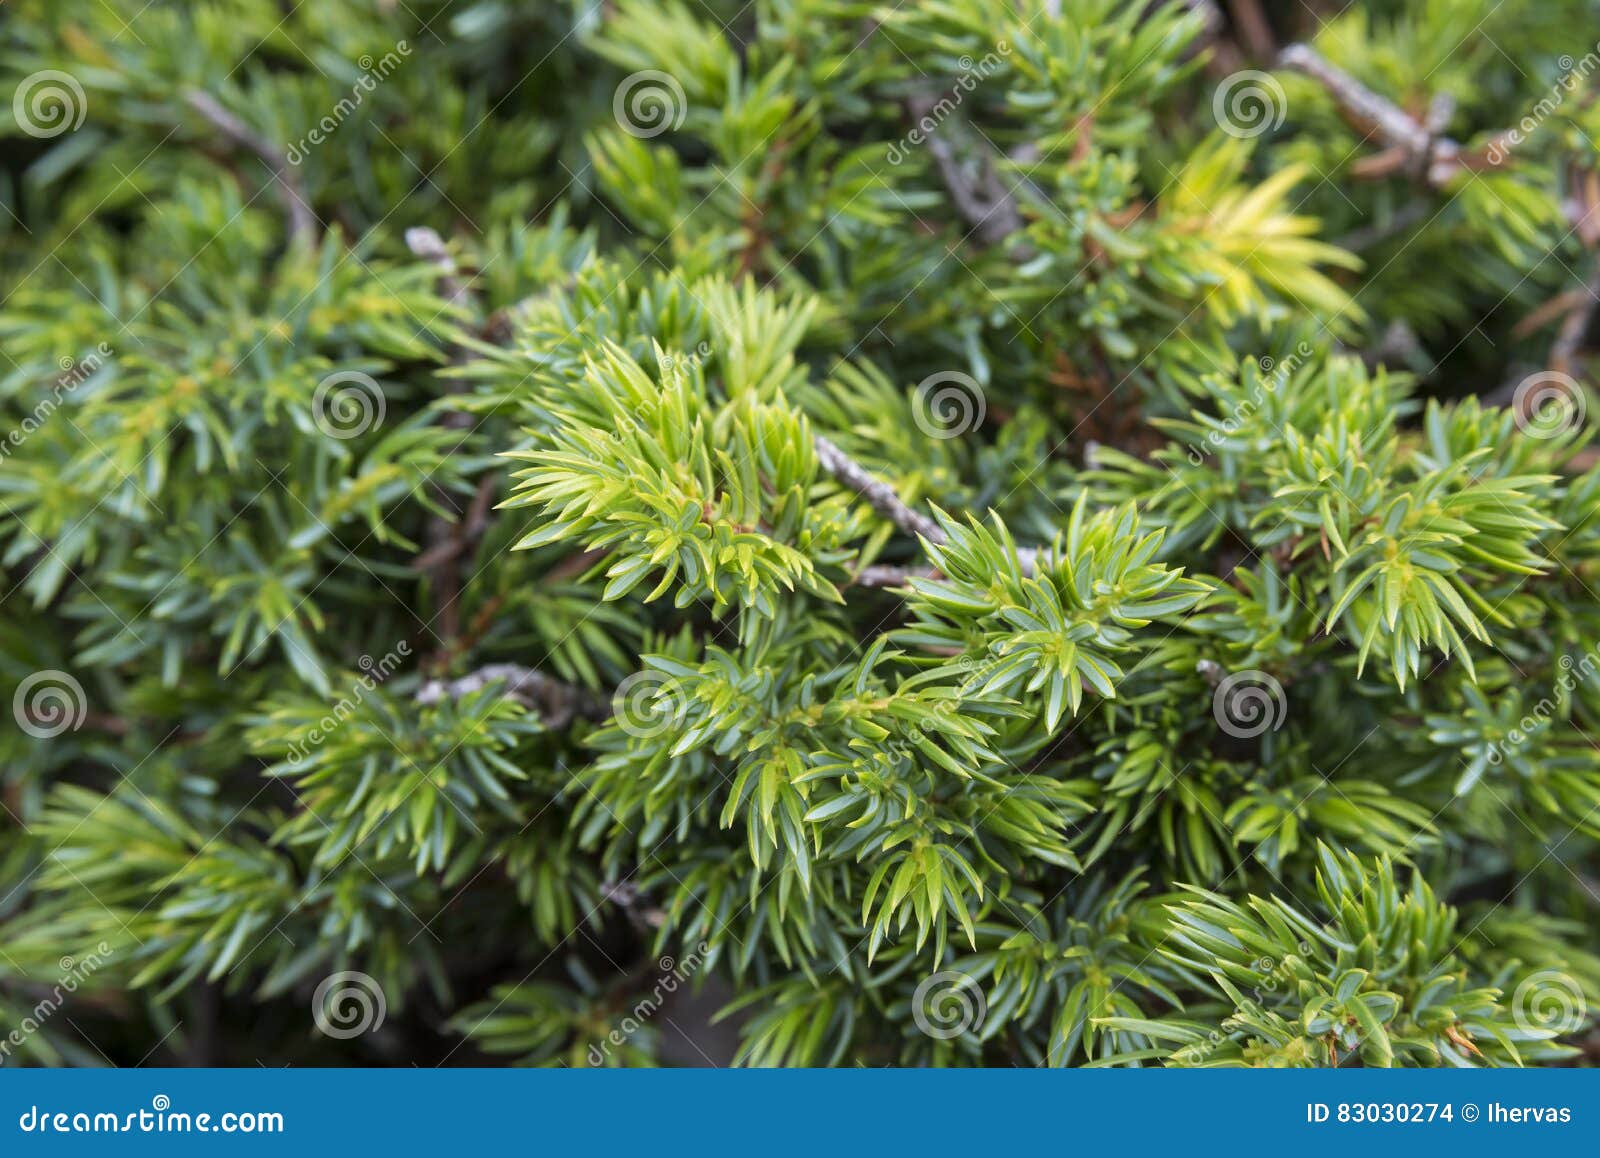 common juniper, juniperus communis subsp. alpina